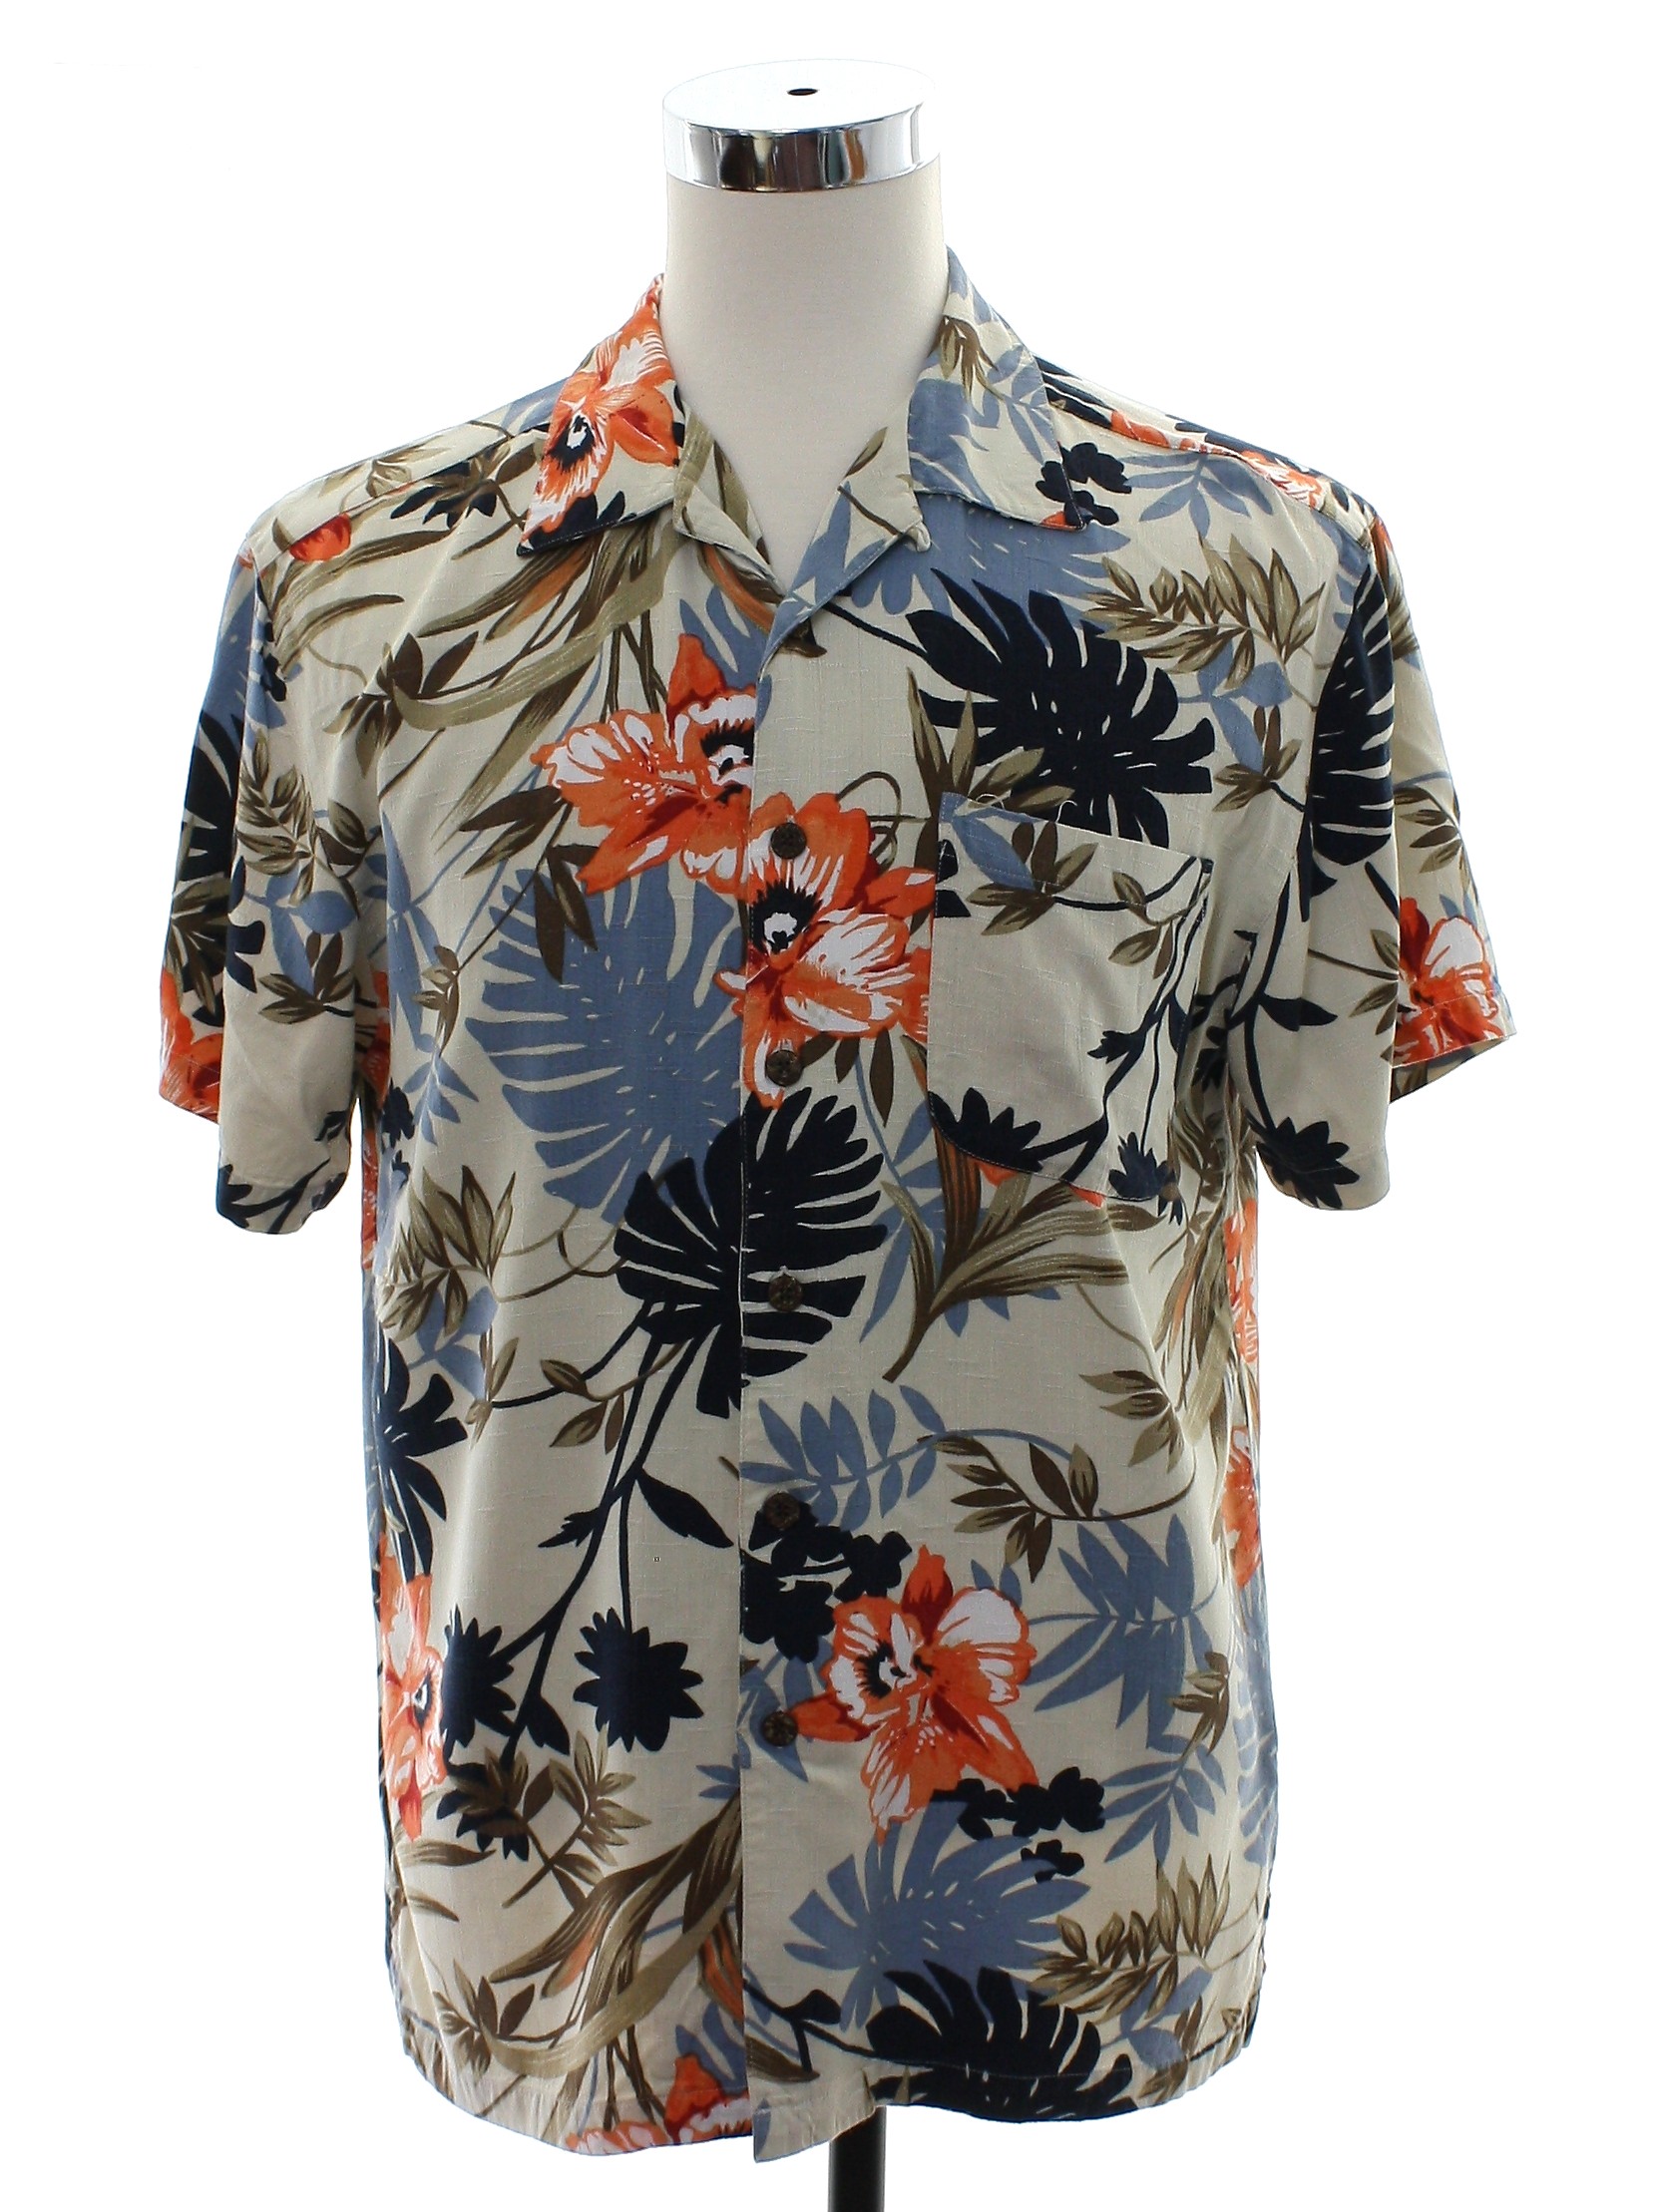 Retro 1990s Hawaiian Shirt: 90s or Newer -Caribbean Joe- Mens beige ...